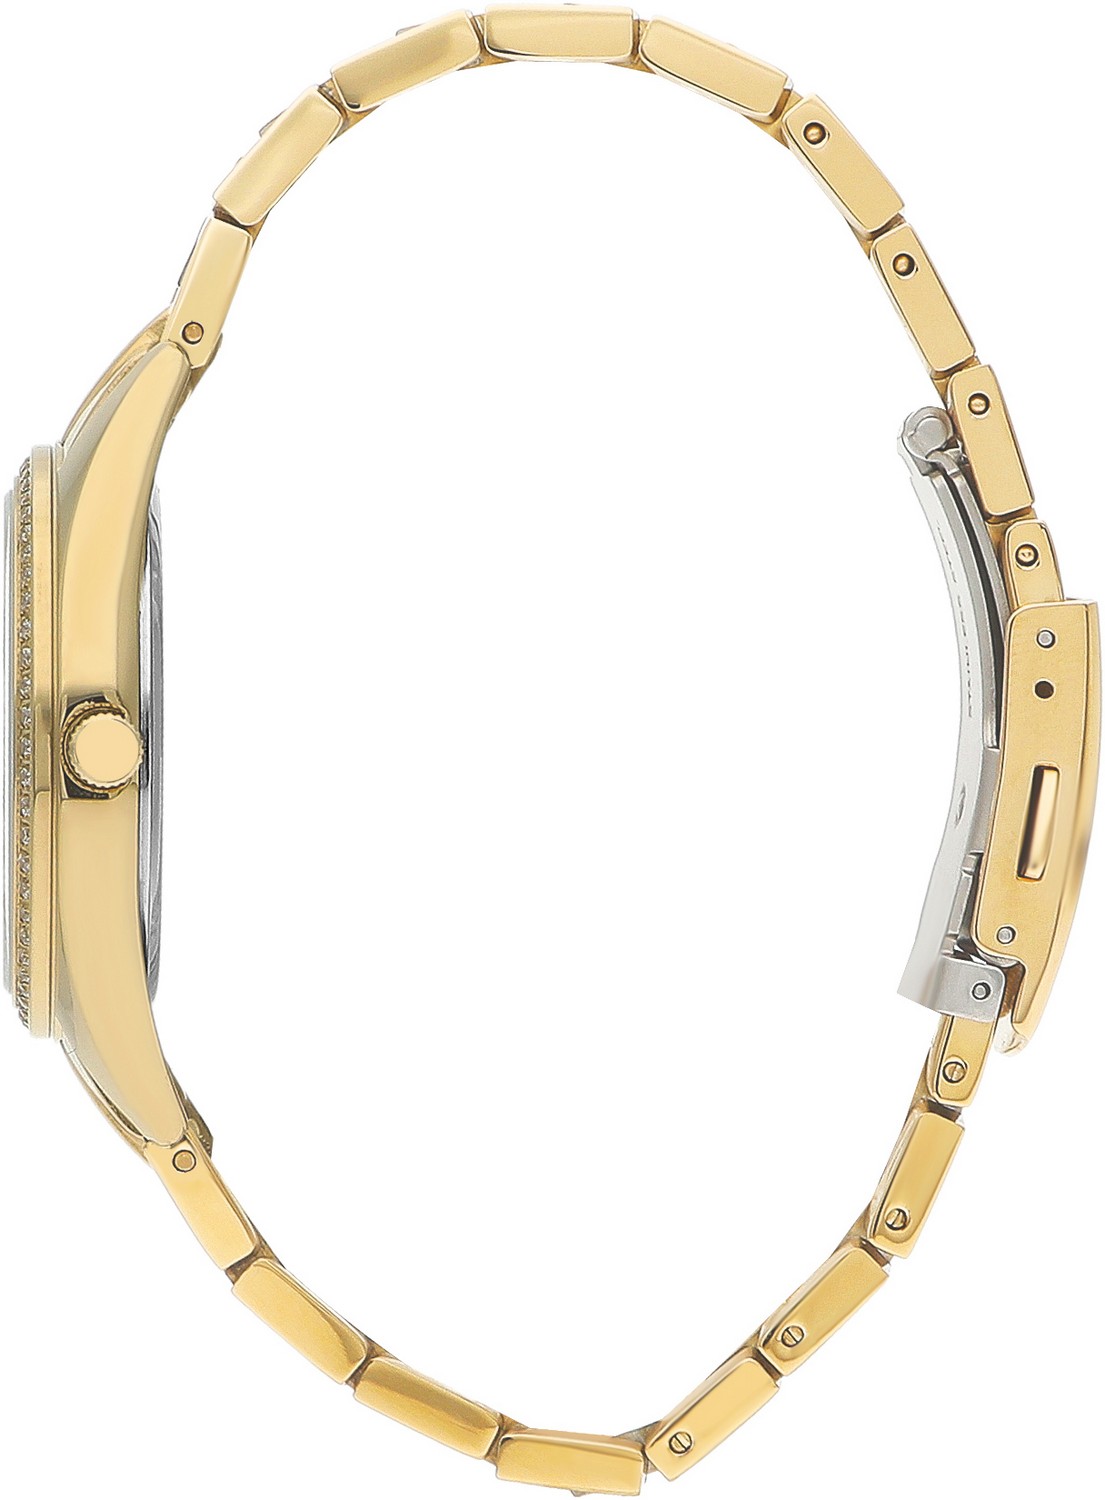 BEVERLY HILLS POLO CLUB  Женские часы, кварцевый механизм, сталь с покрытием, 33 мм